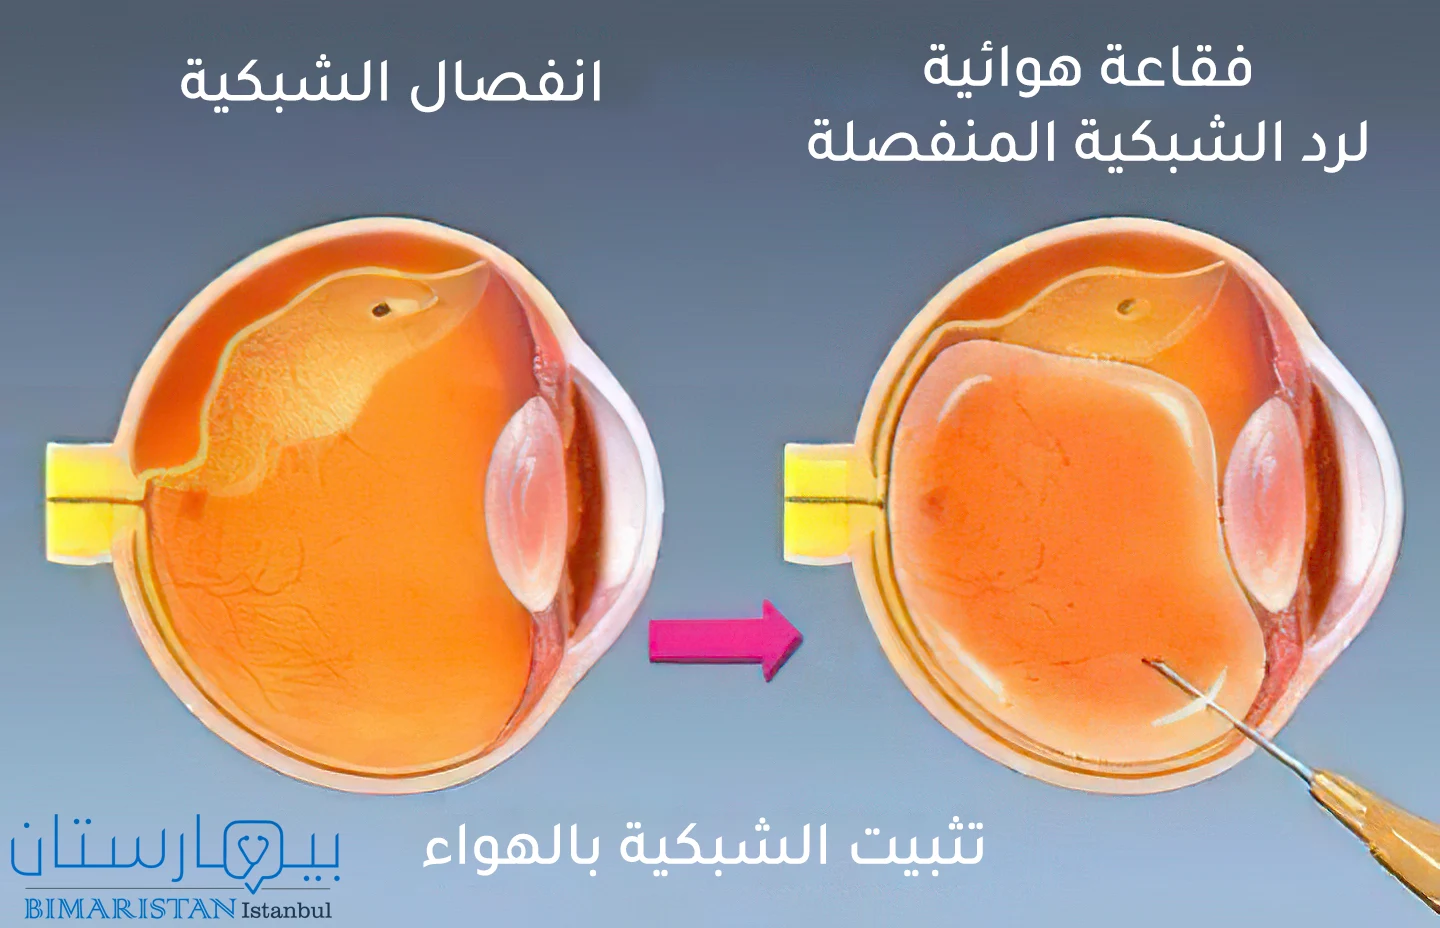 Retinanın hava fiksasyonu ile retina dekolmanı tedavisini gösteren bir görüntü